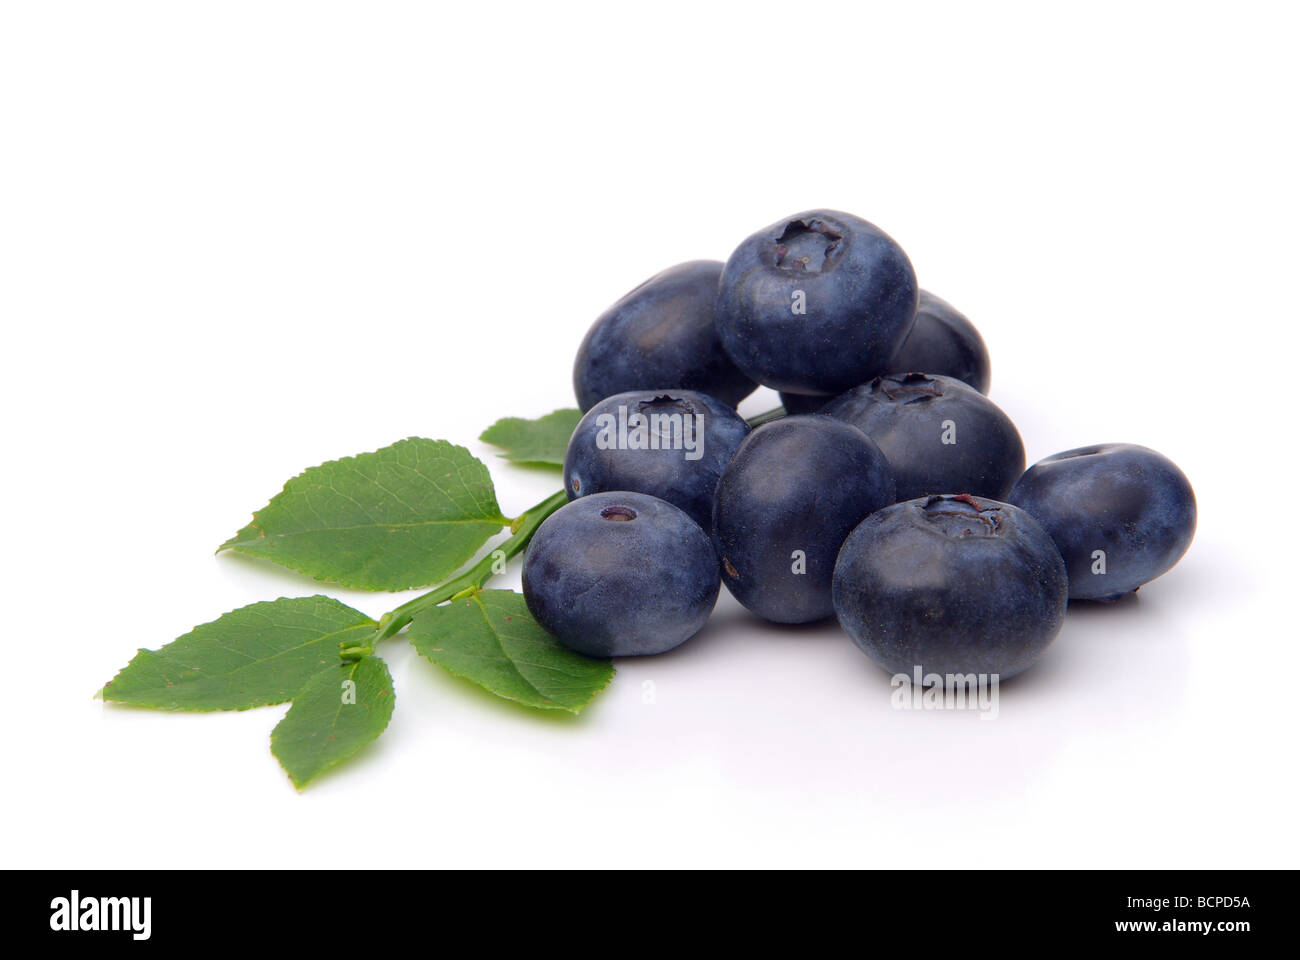 Heidelbeere blueberry 01 Stock Photo